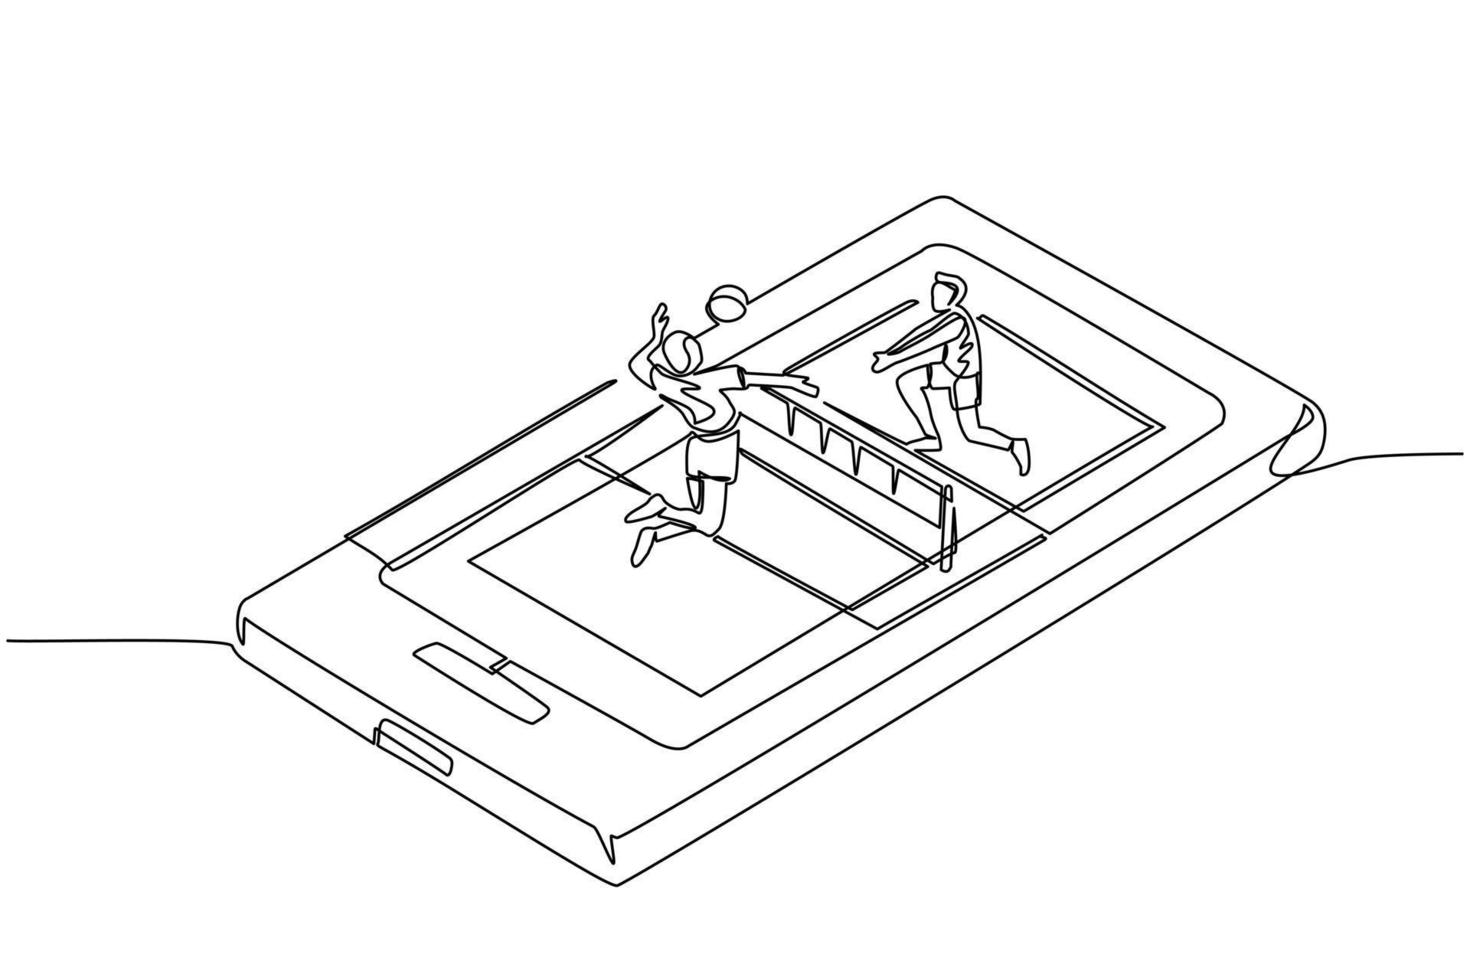 quadra de vôlei de desenho de linha contínua única com dois jogadores na tela do smartphone. jogadores de vôlei de competição esportiva profissional durante a partida, aplicativo móvel. vetor de design gráfico de desenho de uma linha